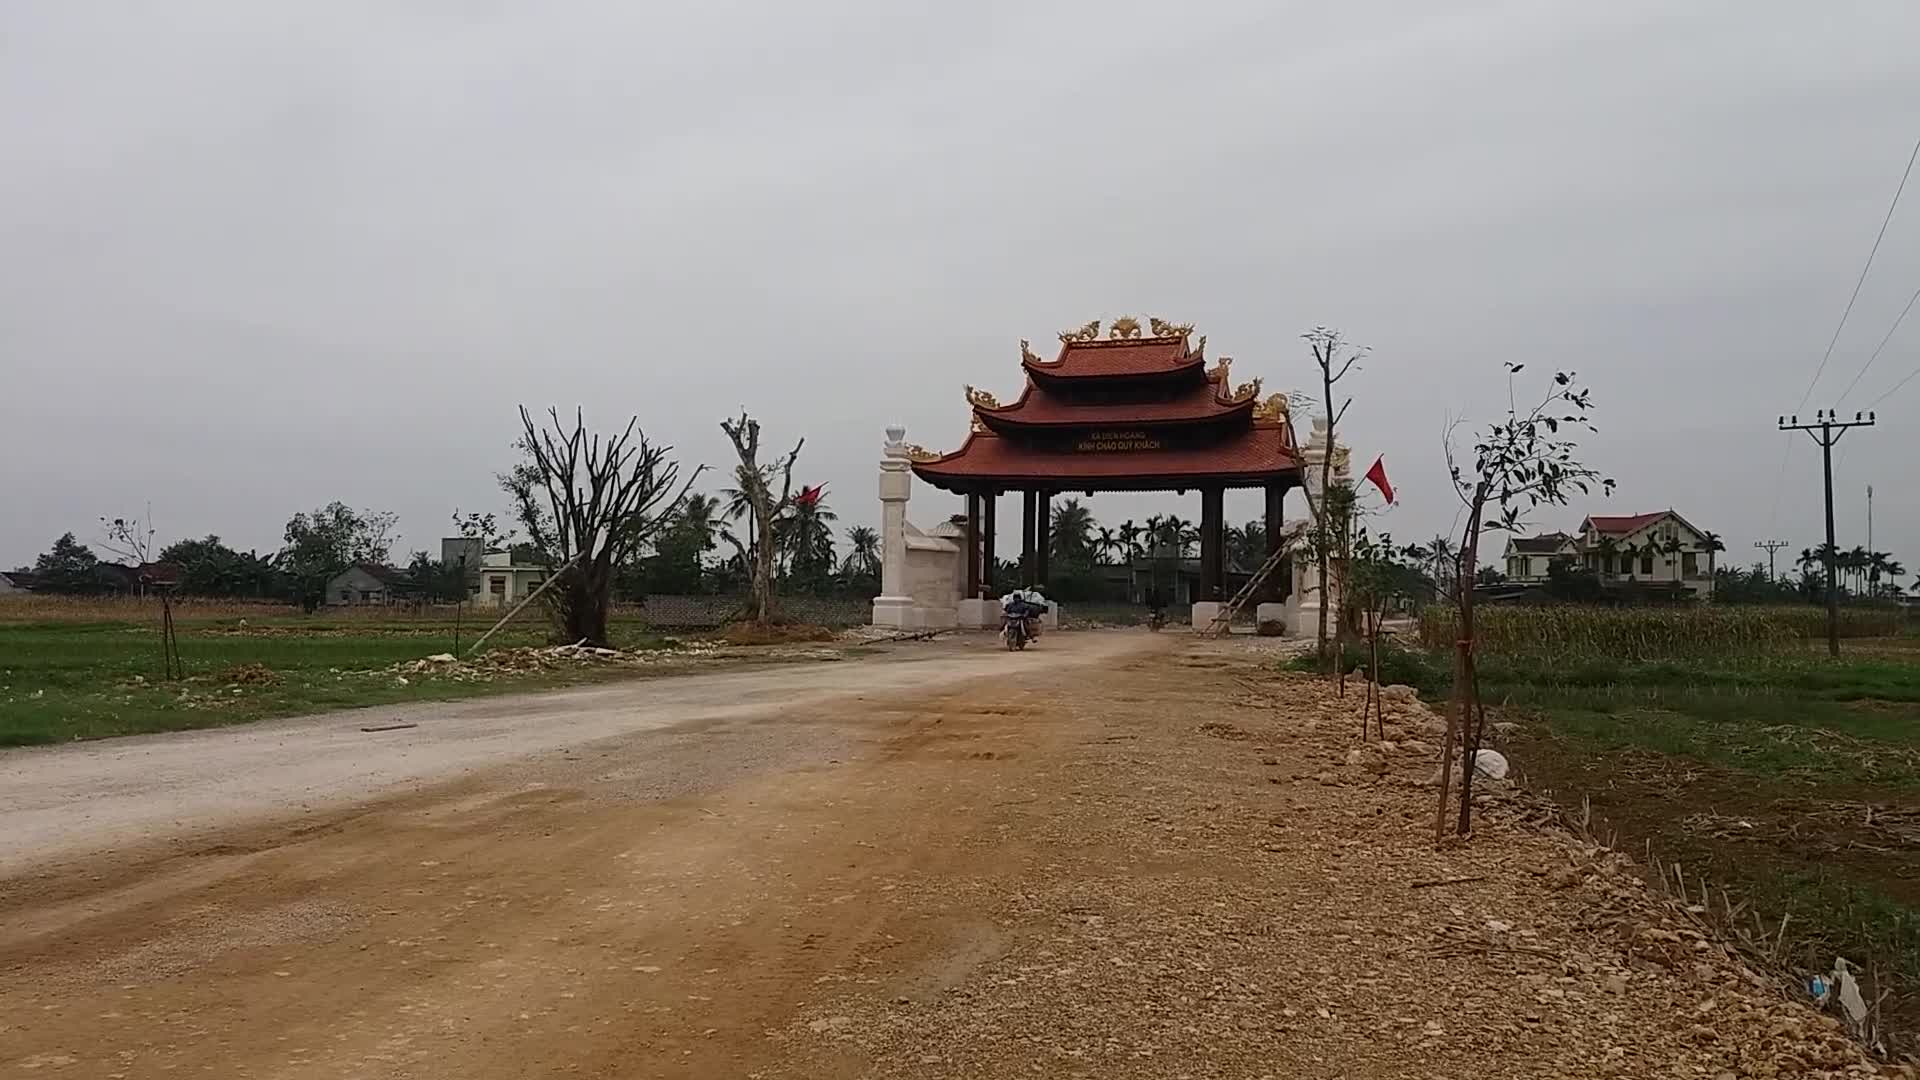 Cổng làng bằng gỗ quý hơn 4 tỉ đồng tại Nghệ An gây xôn xao